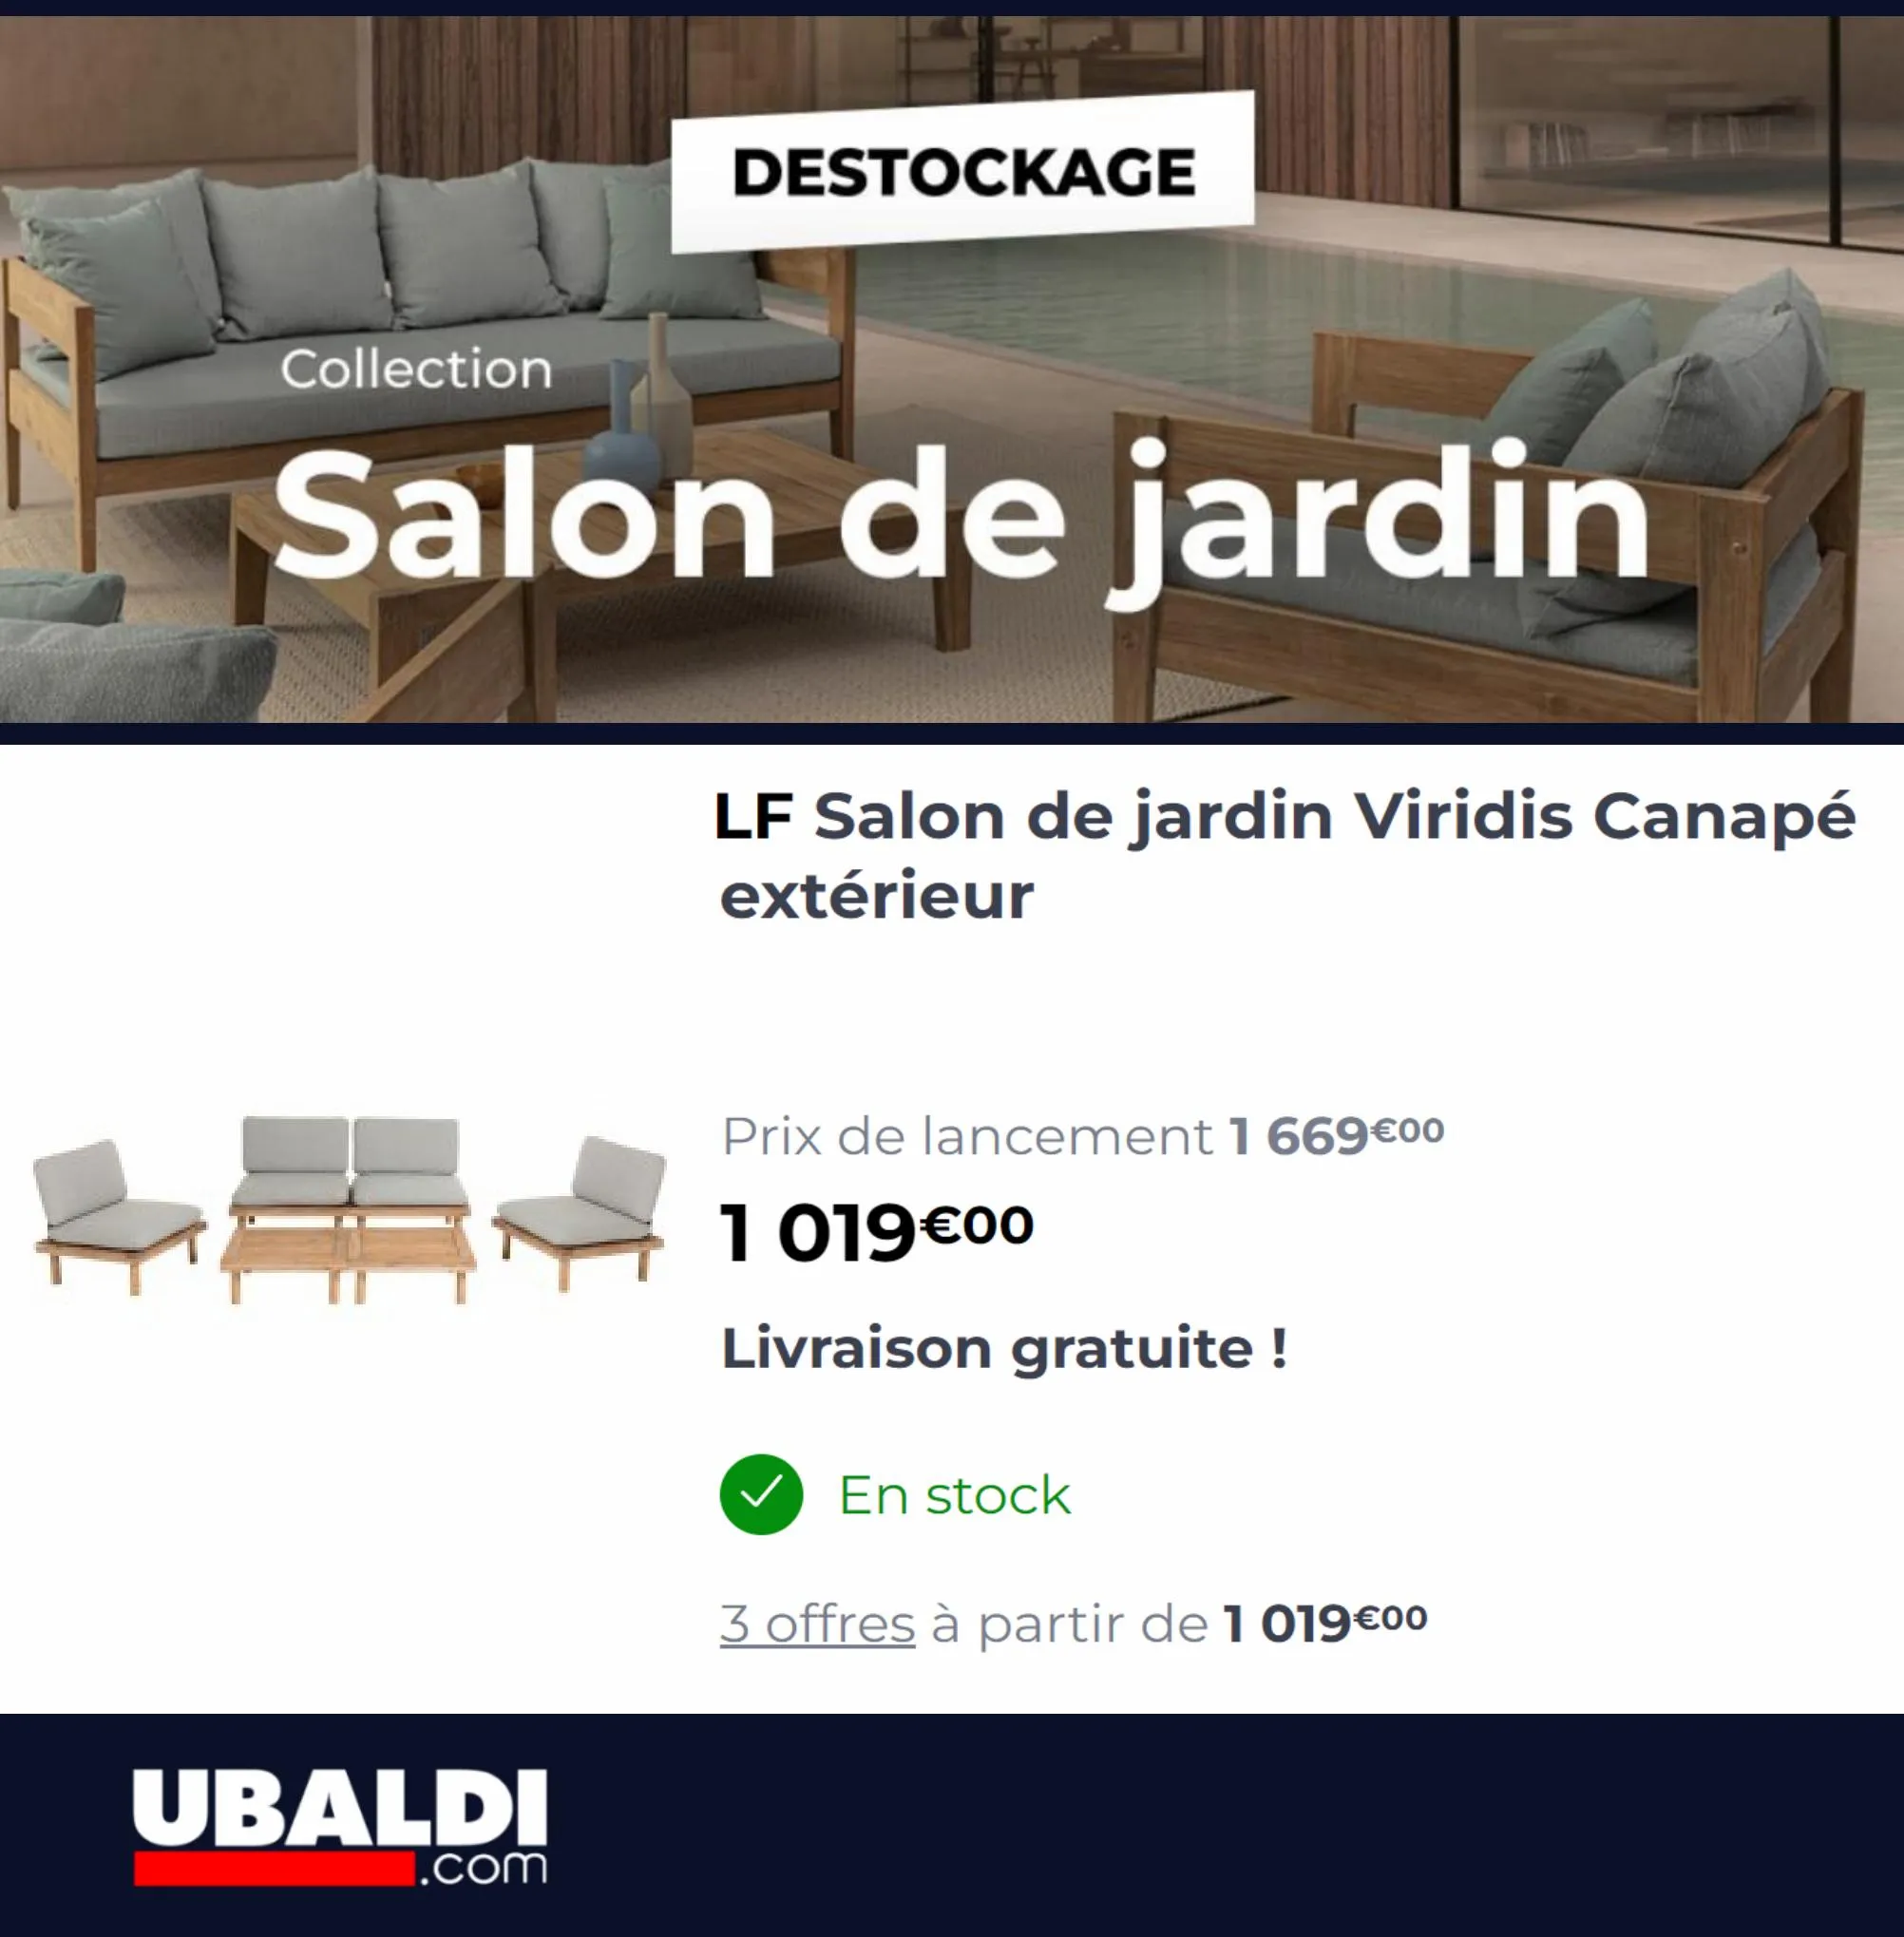 Catalogue Destockage Salon de Jardin, page 00007